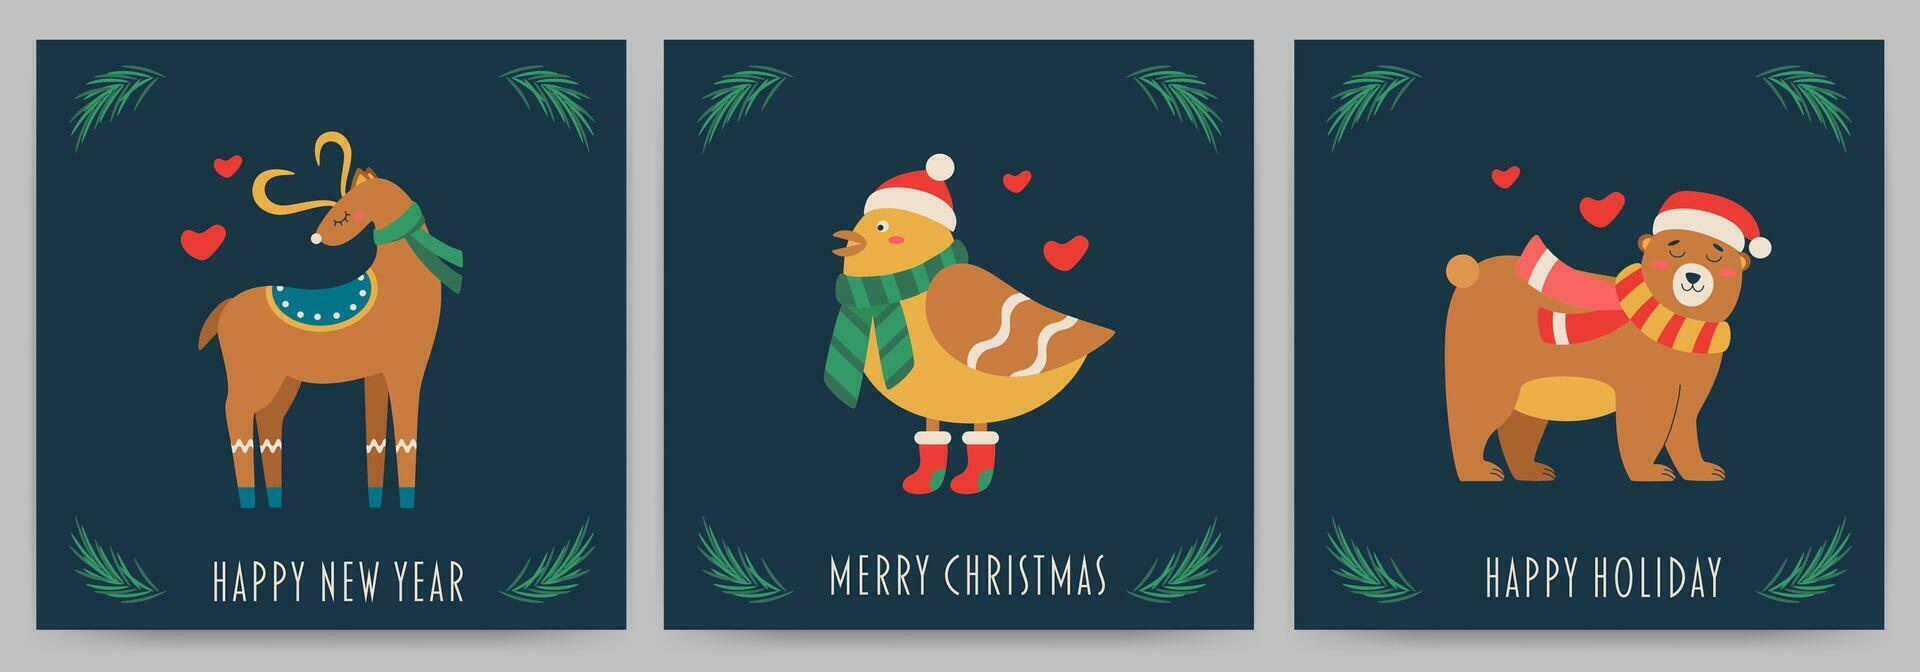 ansichtkaart met tekst gelukkig nieuw jaar, vrolijk kerstmis, gelukkig vakantie, beer, hert, vogel. vector